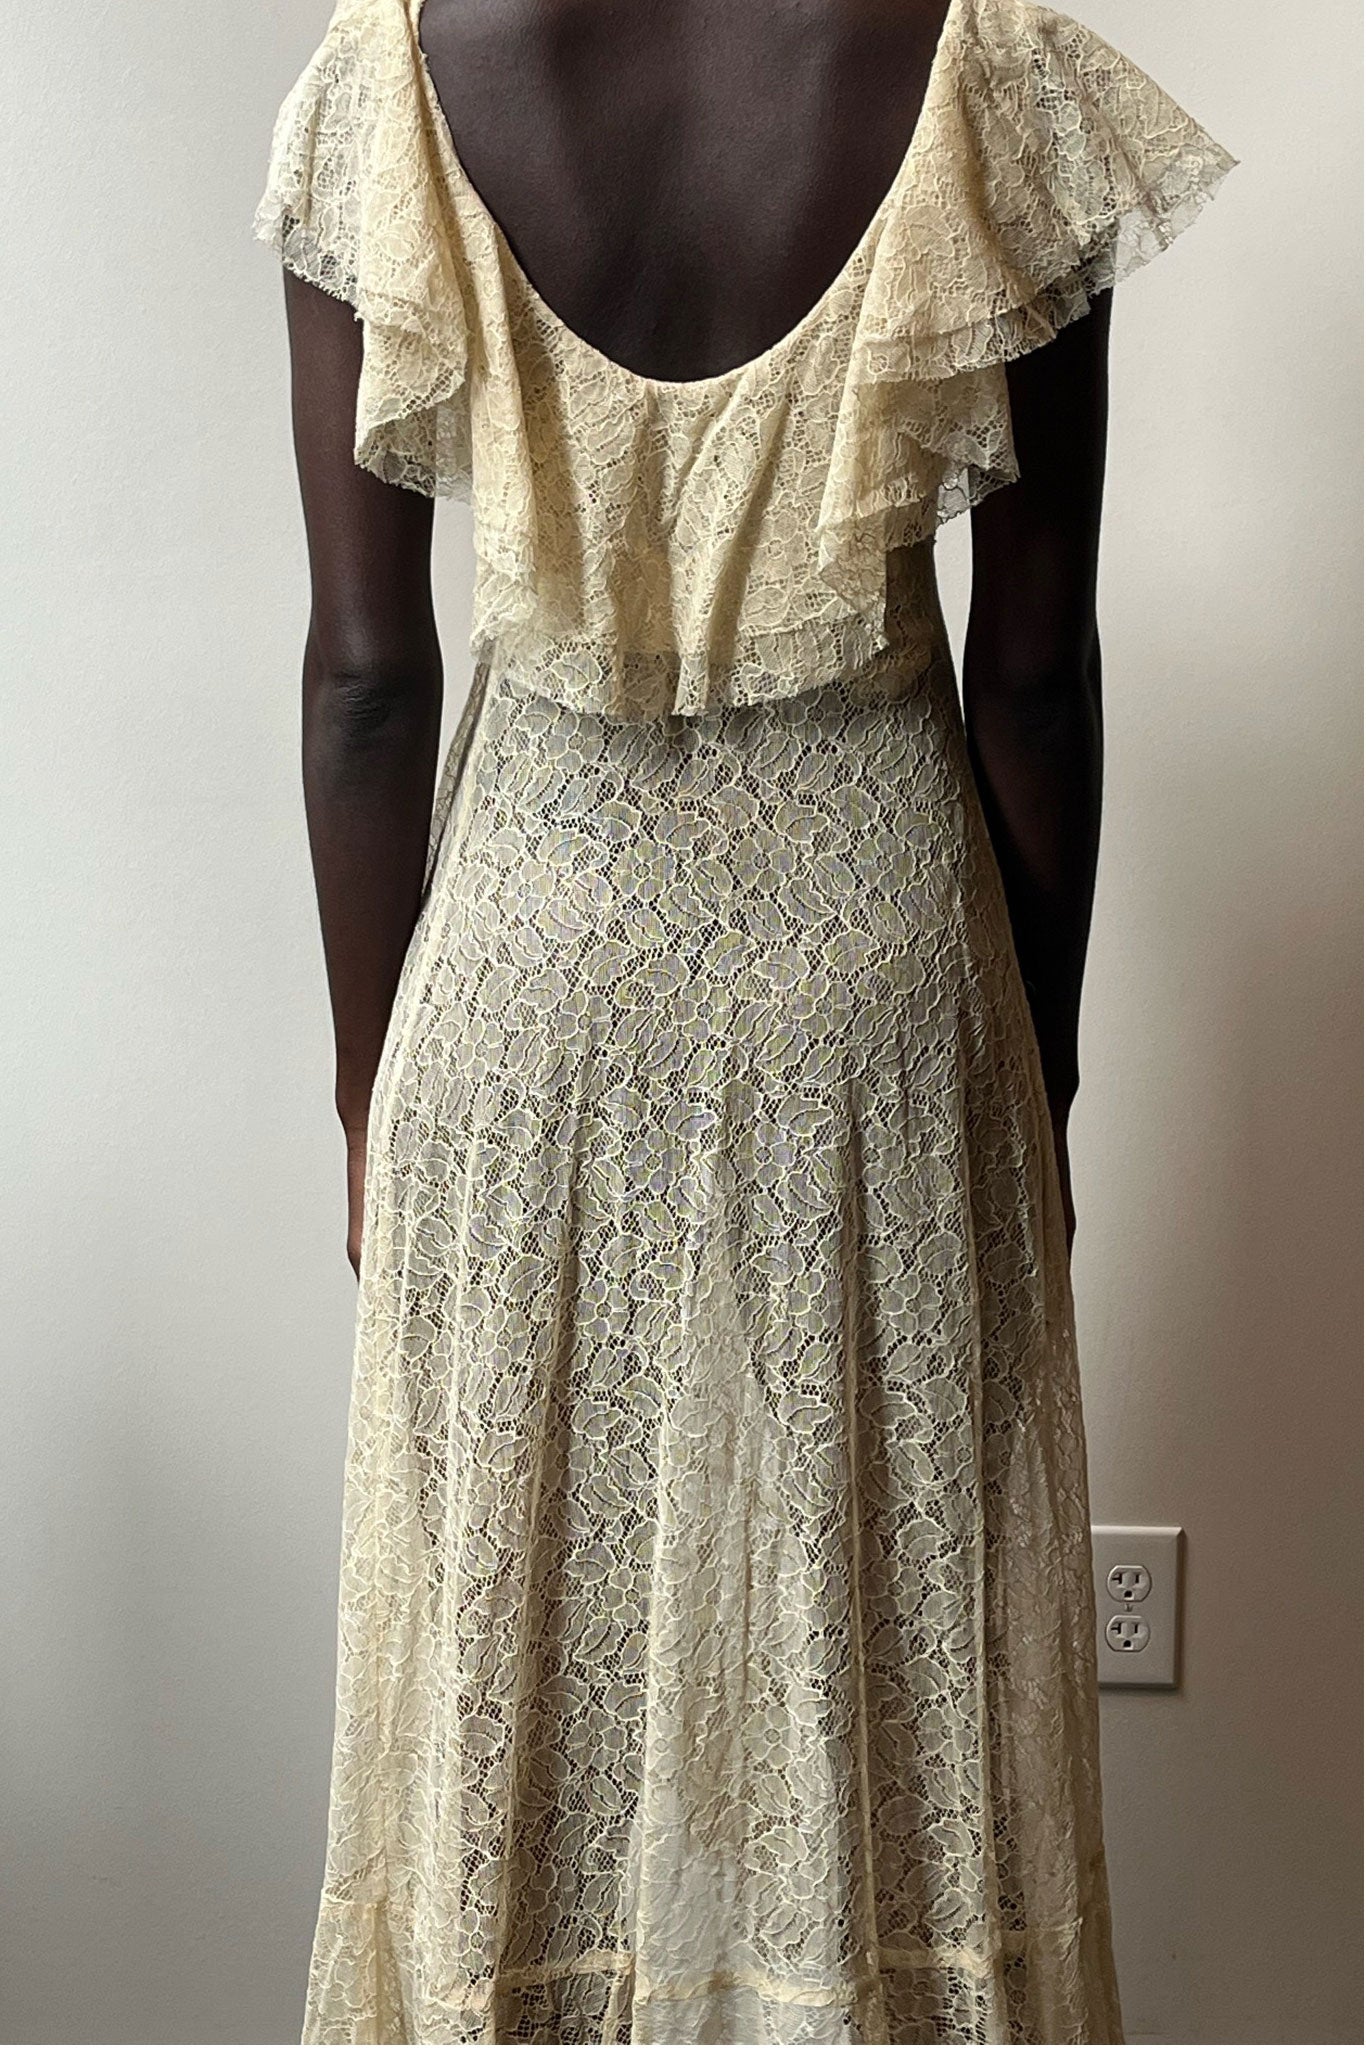 Vintage 1930s ivory cotton lace dress